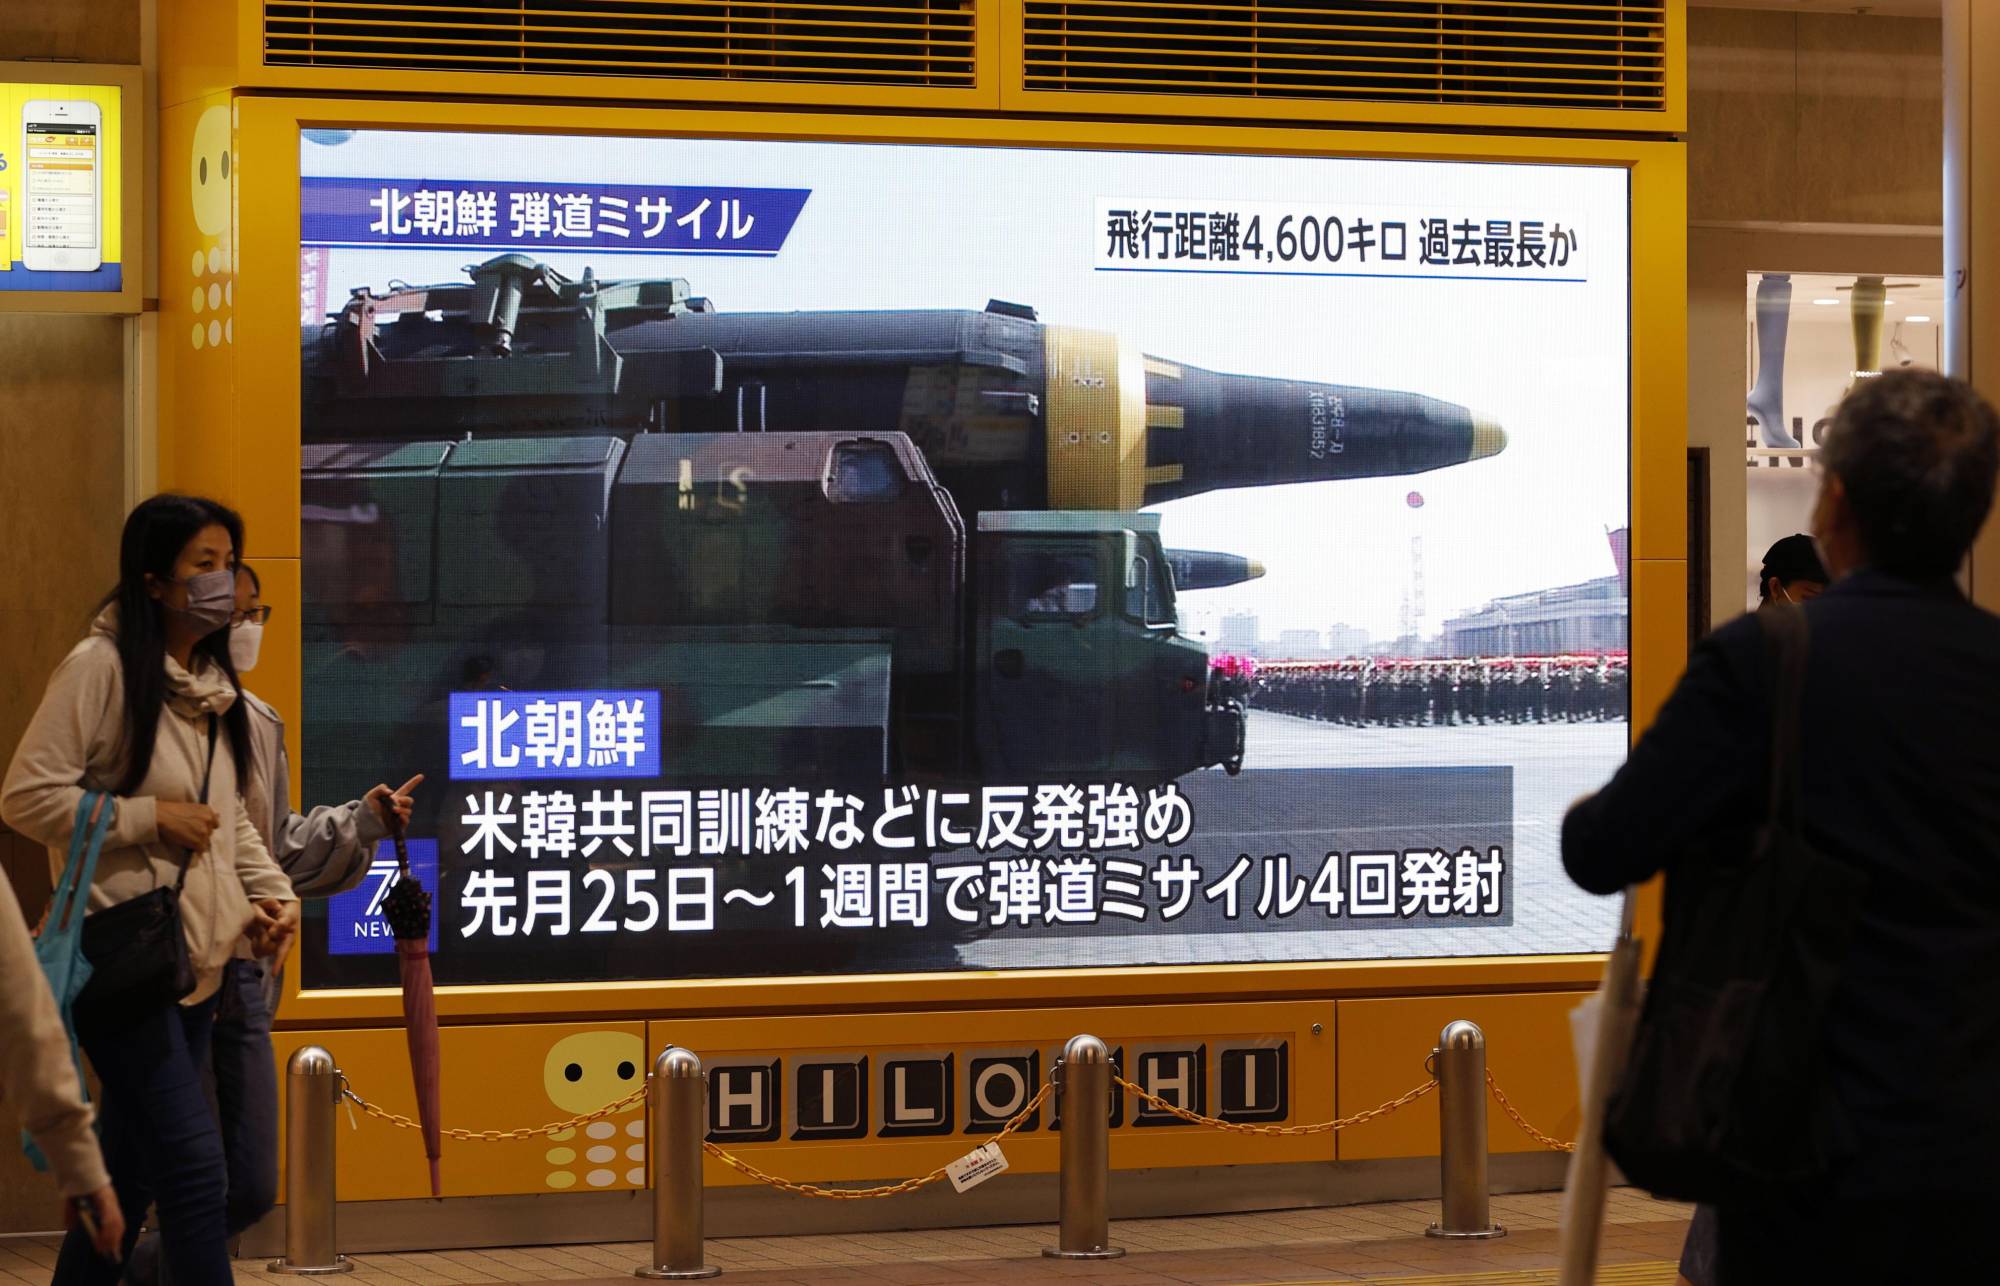 Triều Tiên đã 6 lần phóng tên lửa trong 12 ngày qua.